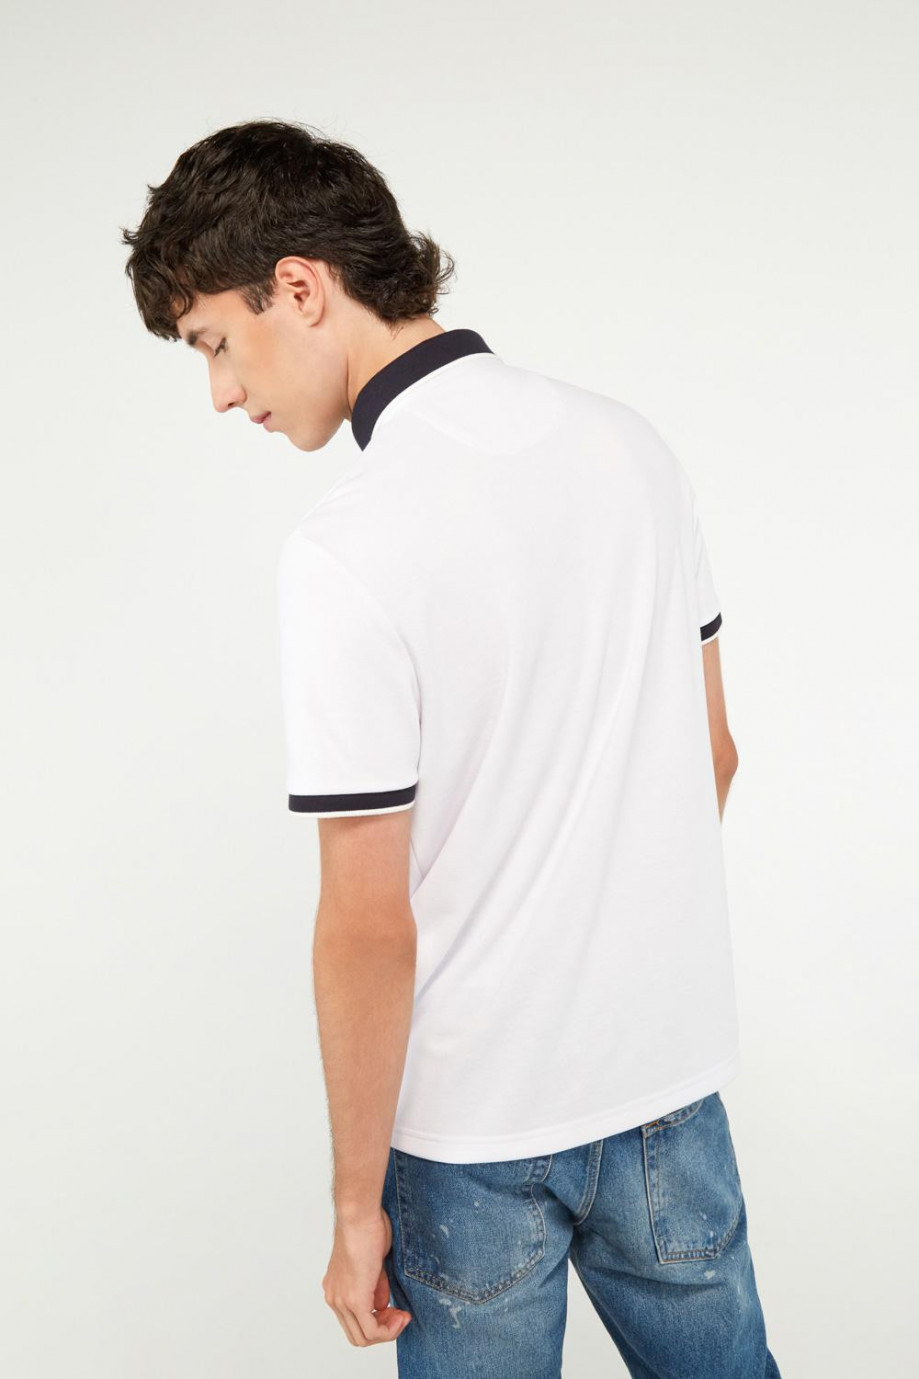 Camiseta polo blanca con cuello y puños tejidos en contraste